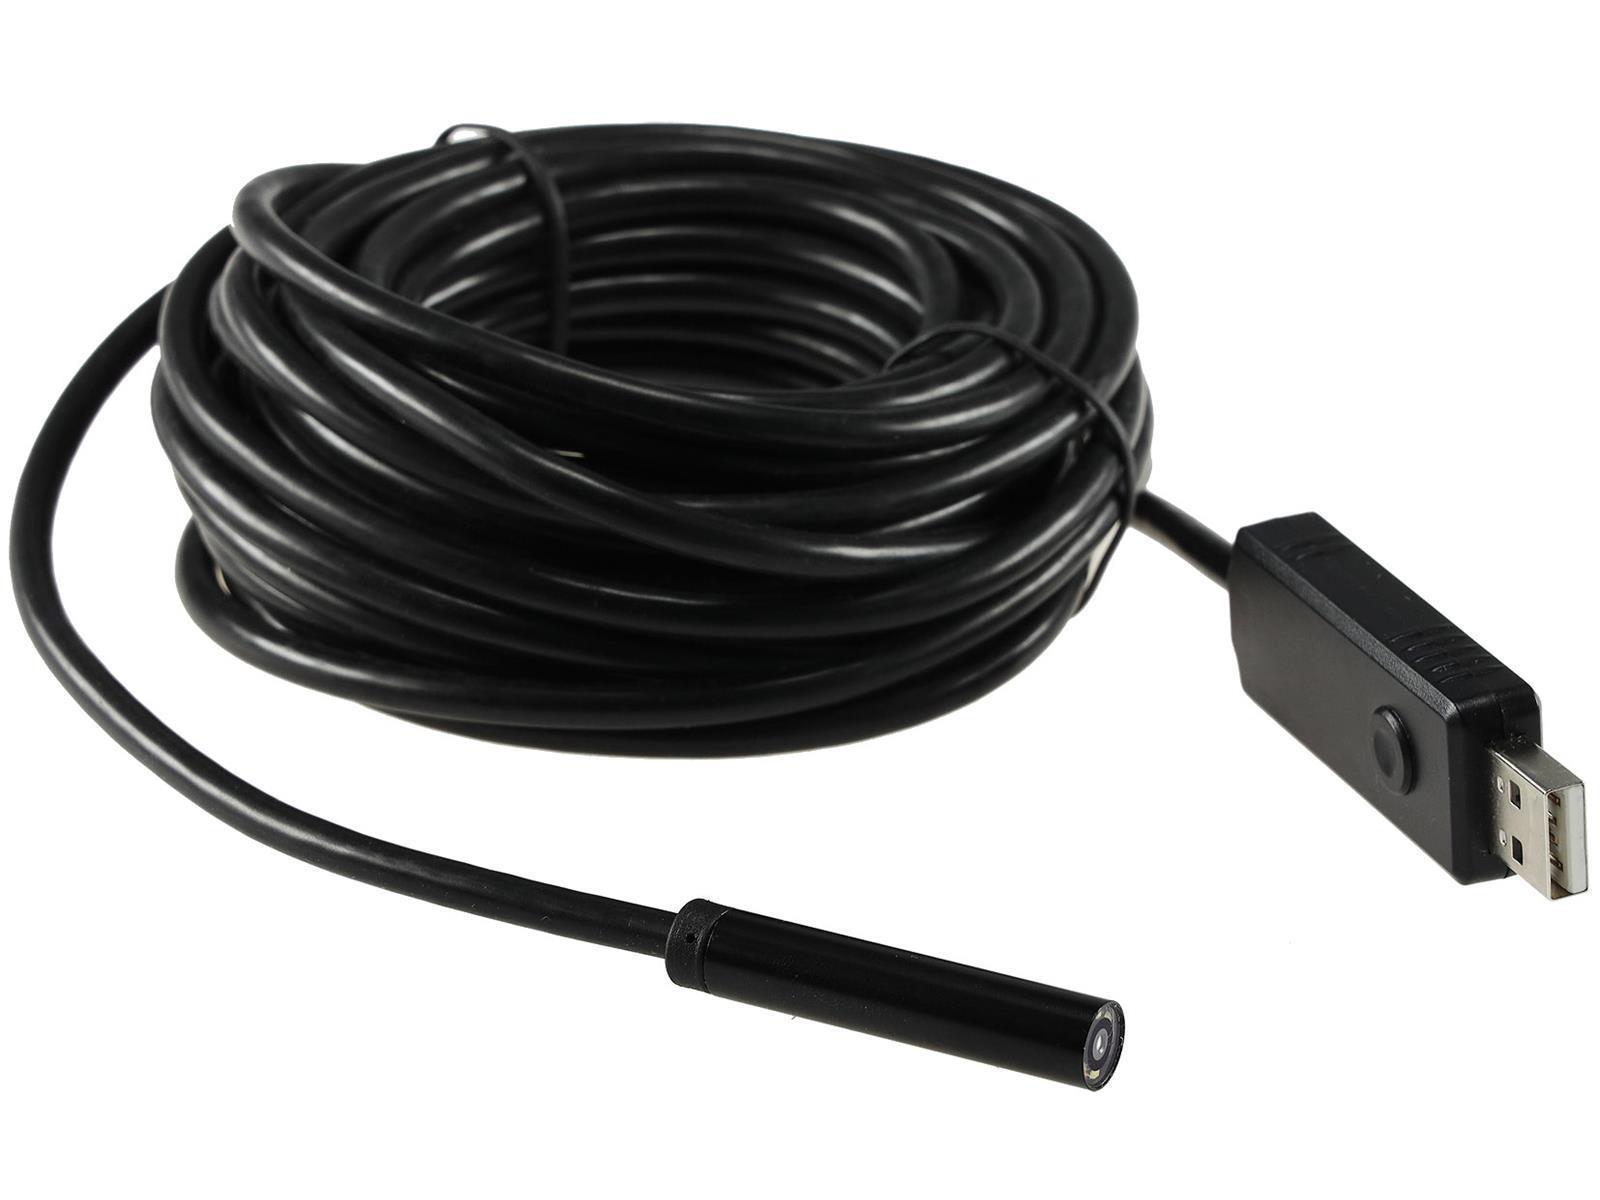 Endoskopkamera USB mit 7m KabelHD Auflösung 1600x1200, IP67 wasserfest